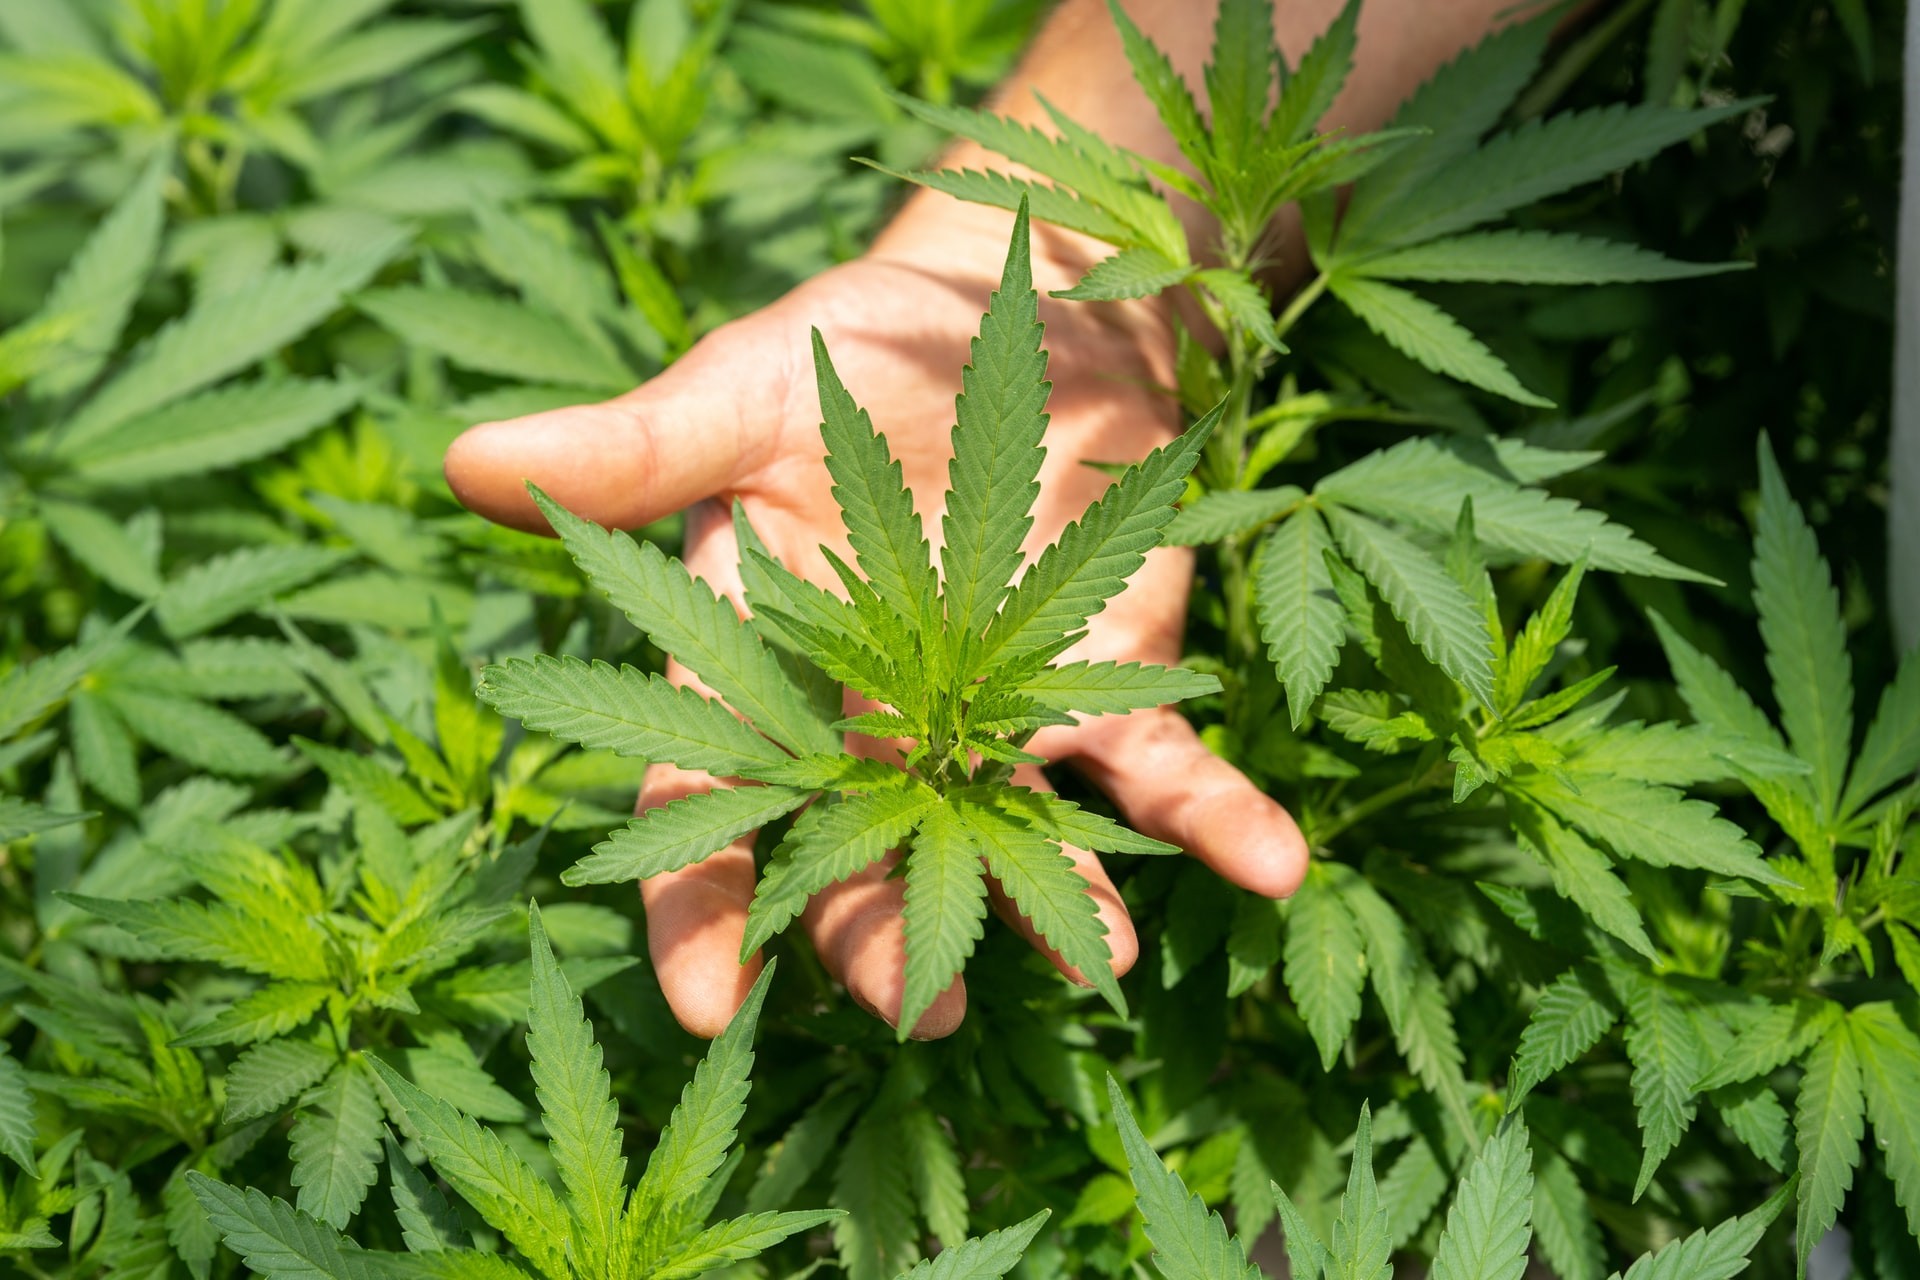 Entenda o que propõe o projeto de lei que autoriza plantio de cannabis -  Revista Galileu | Sociedade